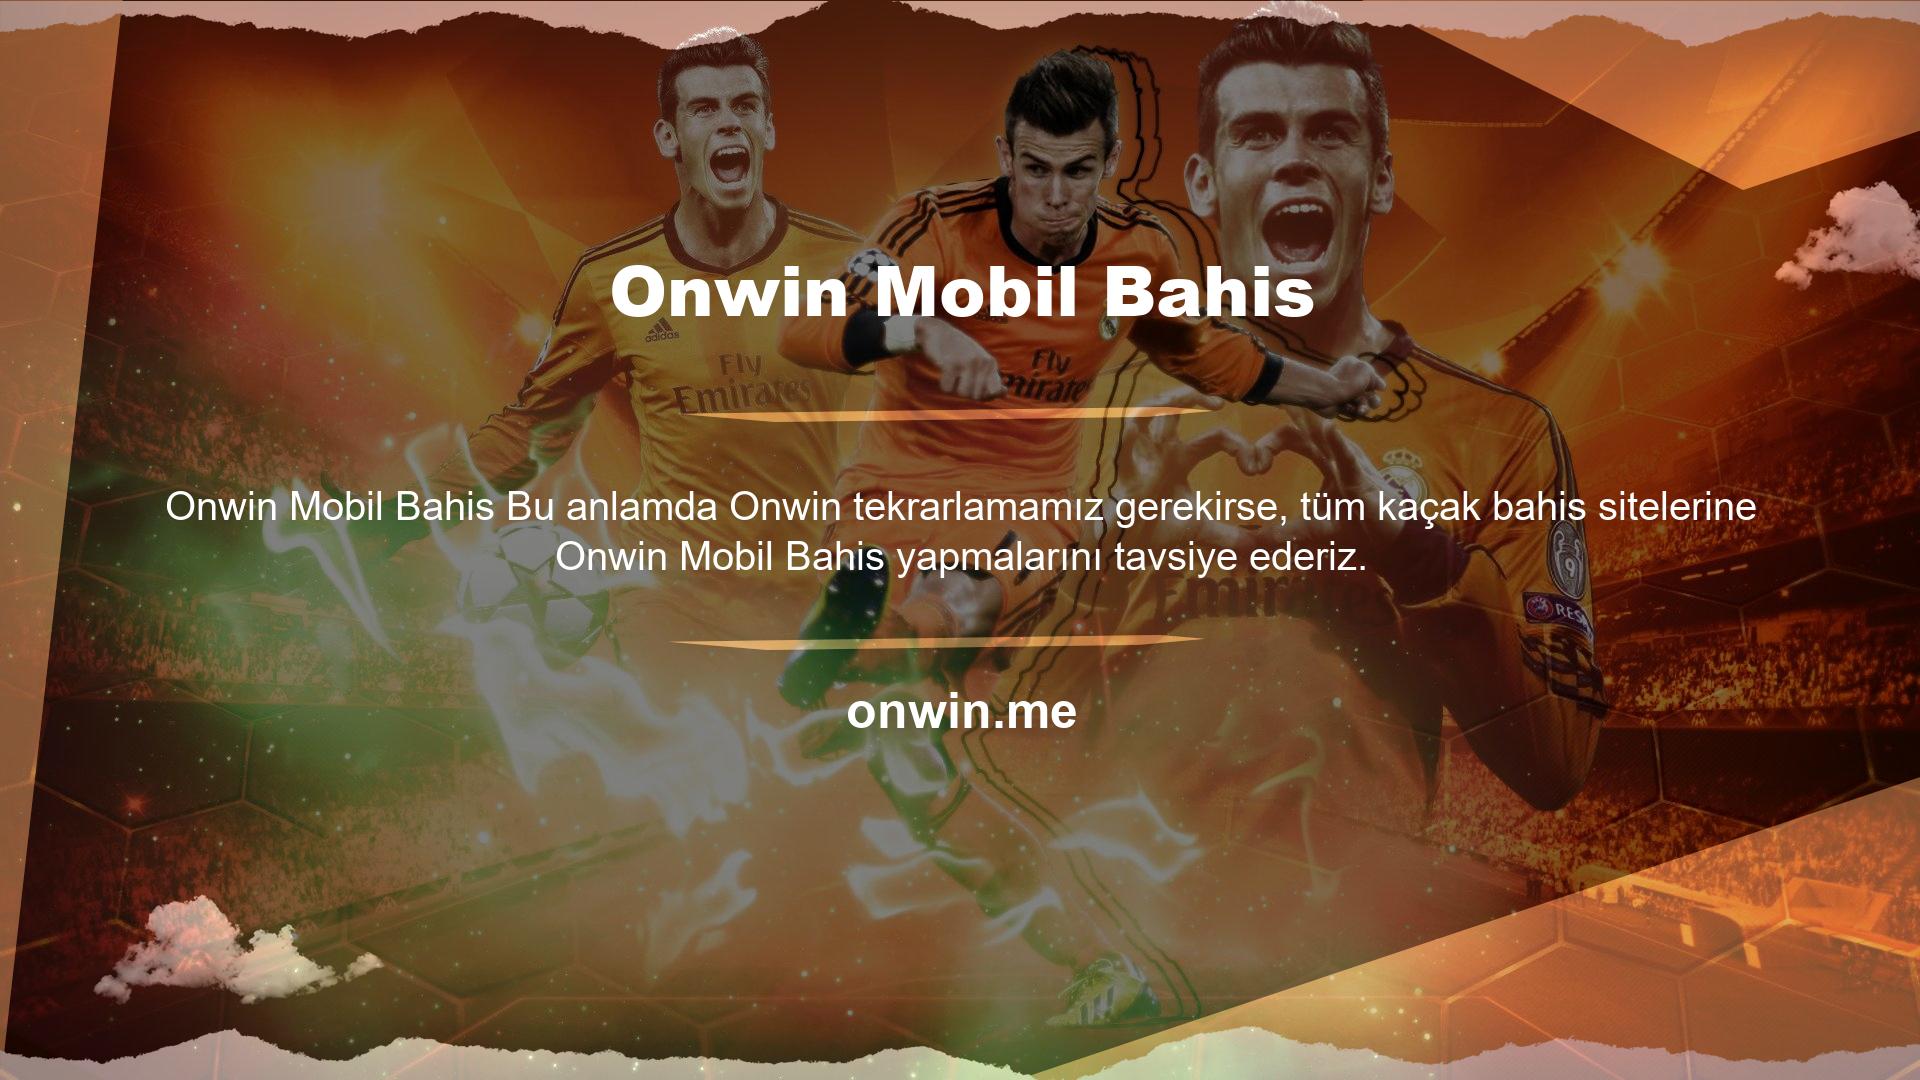 Yönetim kurulunun Onwin Mobil Bahis hakkında gerekli detayları her zaman tereddüt etmeden sağlayacağını hatırlatmak isteriz